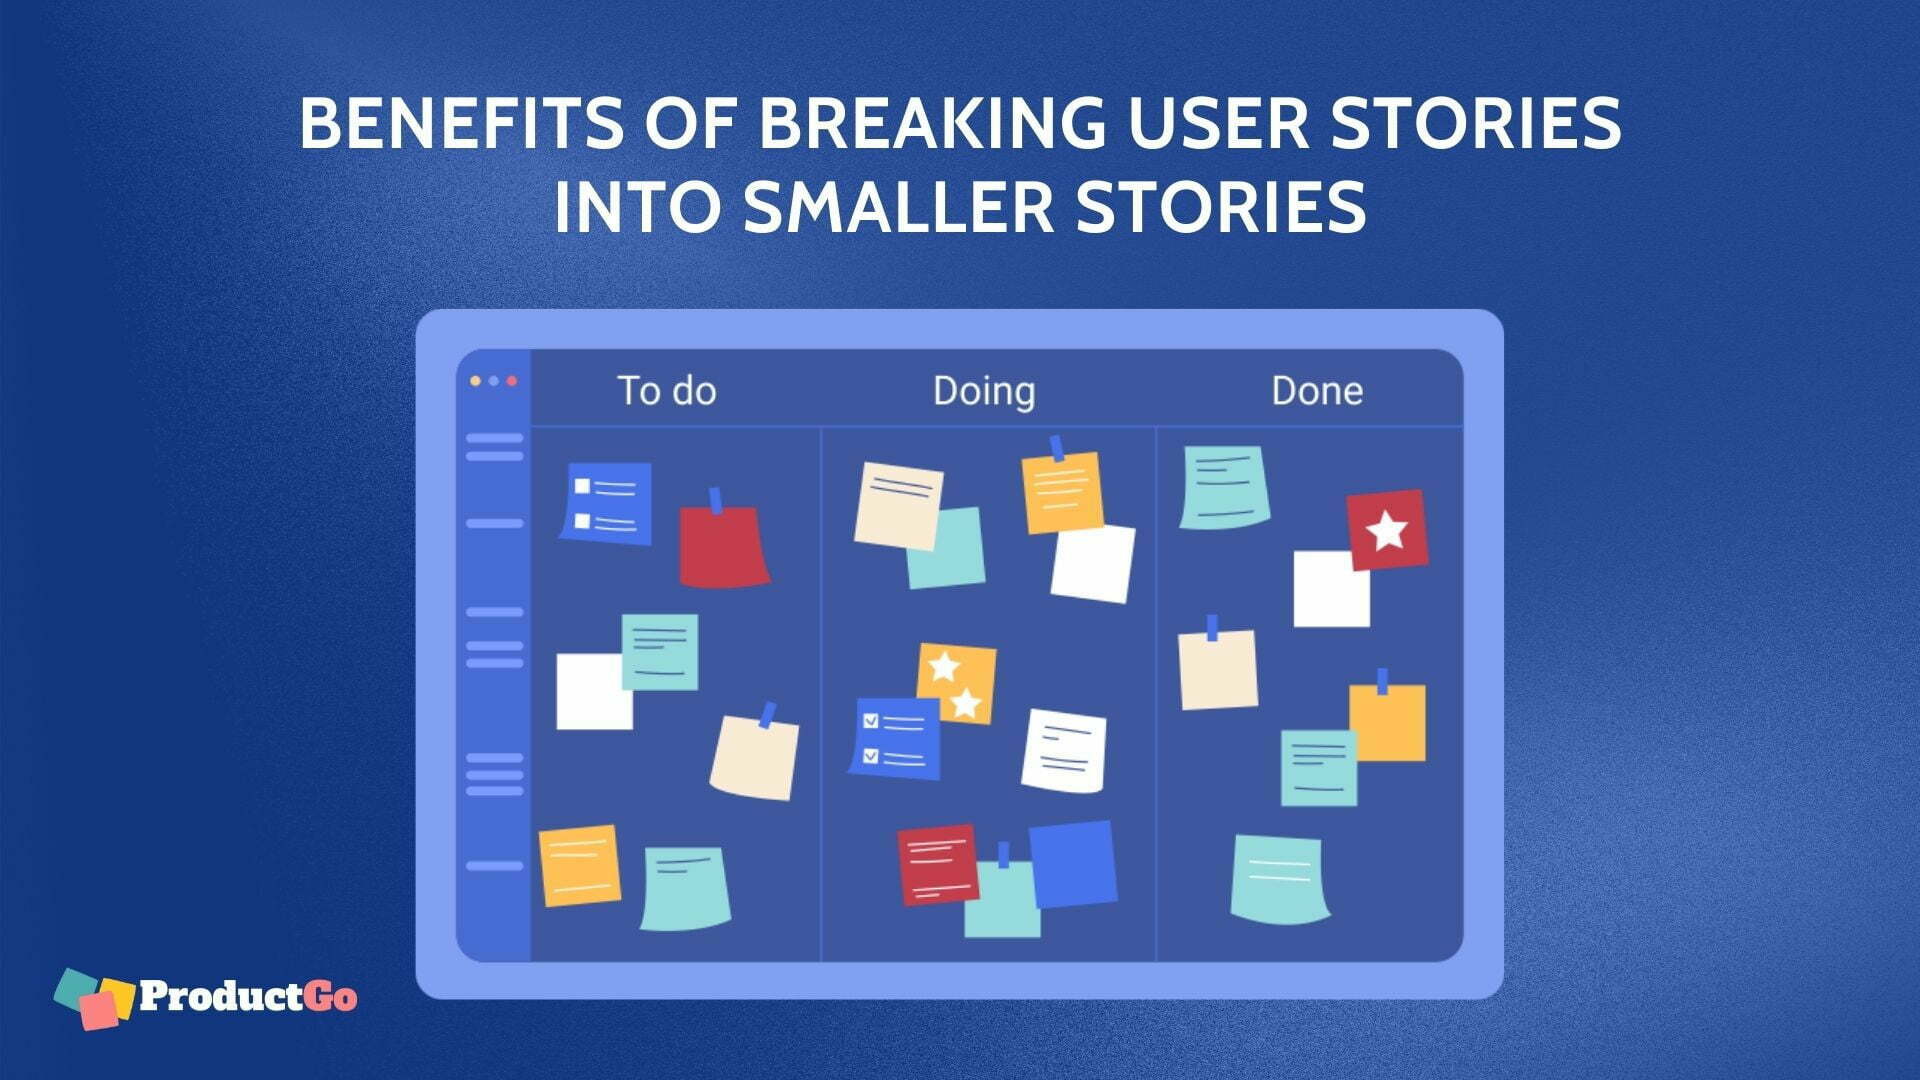 BENEFITS OF BREAKING USER STORIES INTO SMALLER STORIES